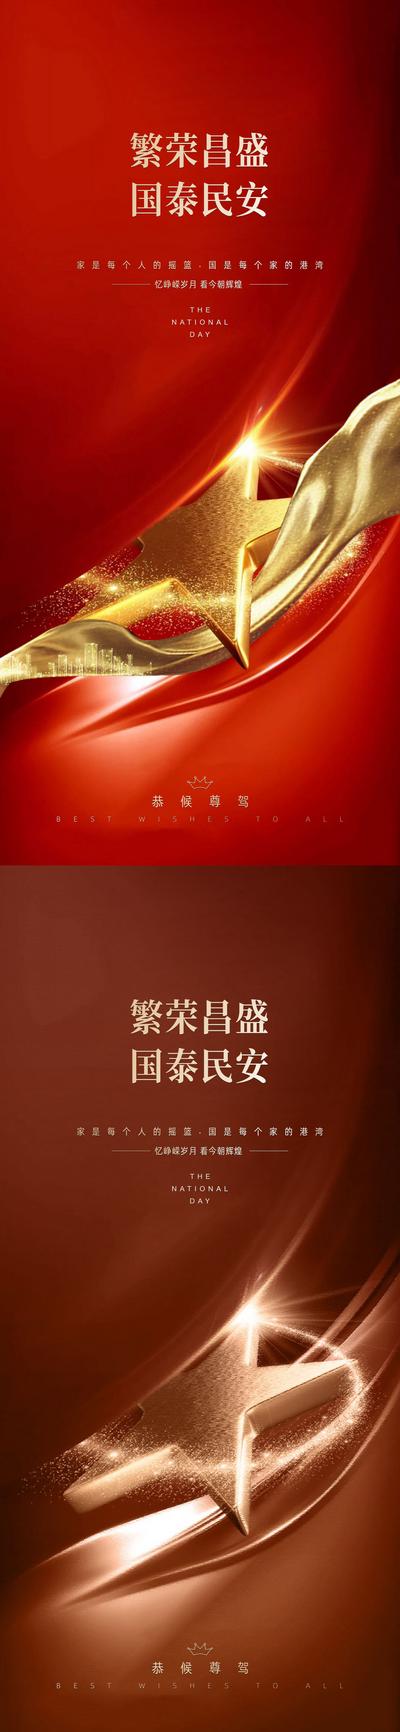 南门网 海报 房地产 公历节日 国庆节 红金 系列 